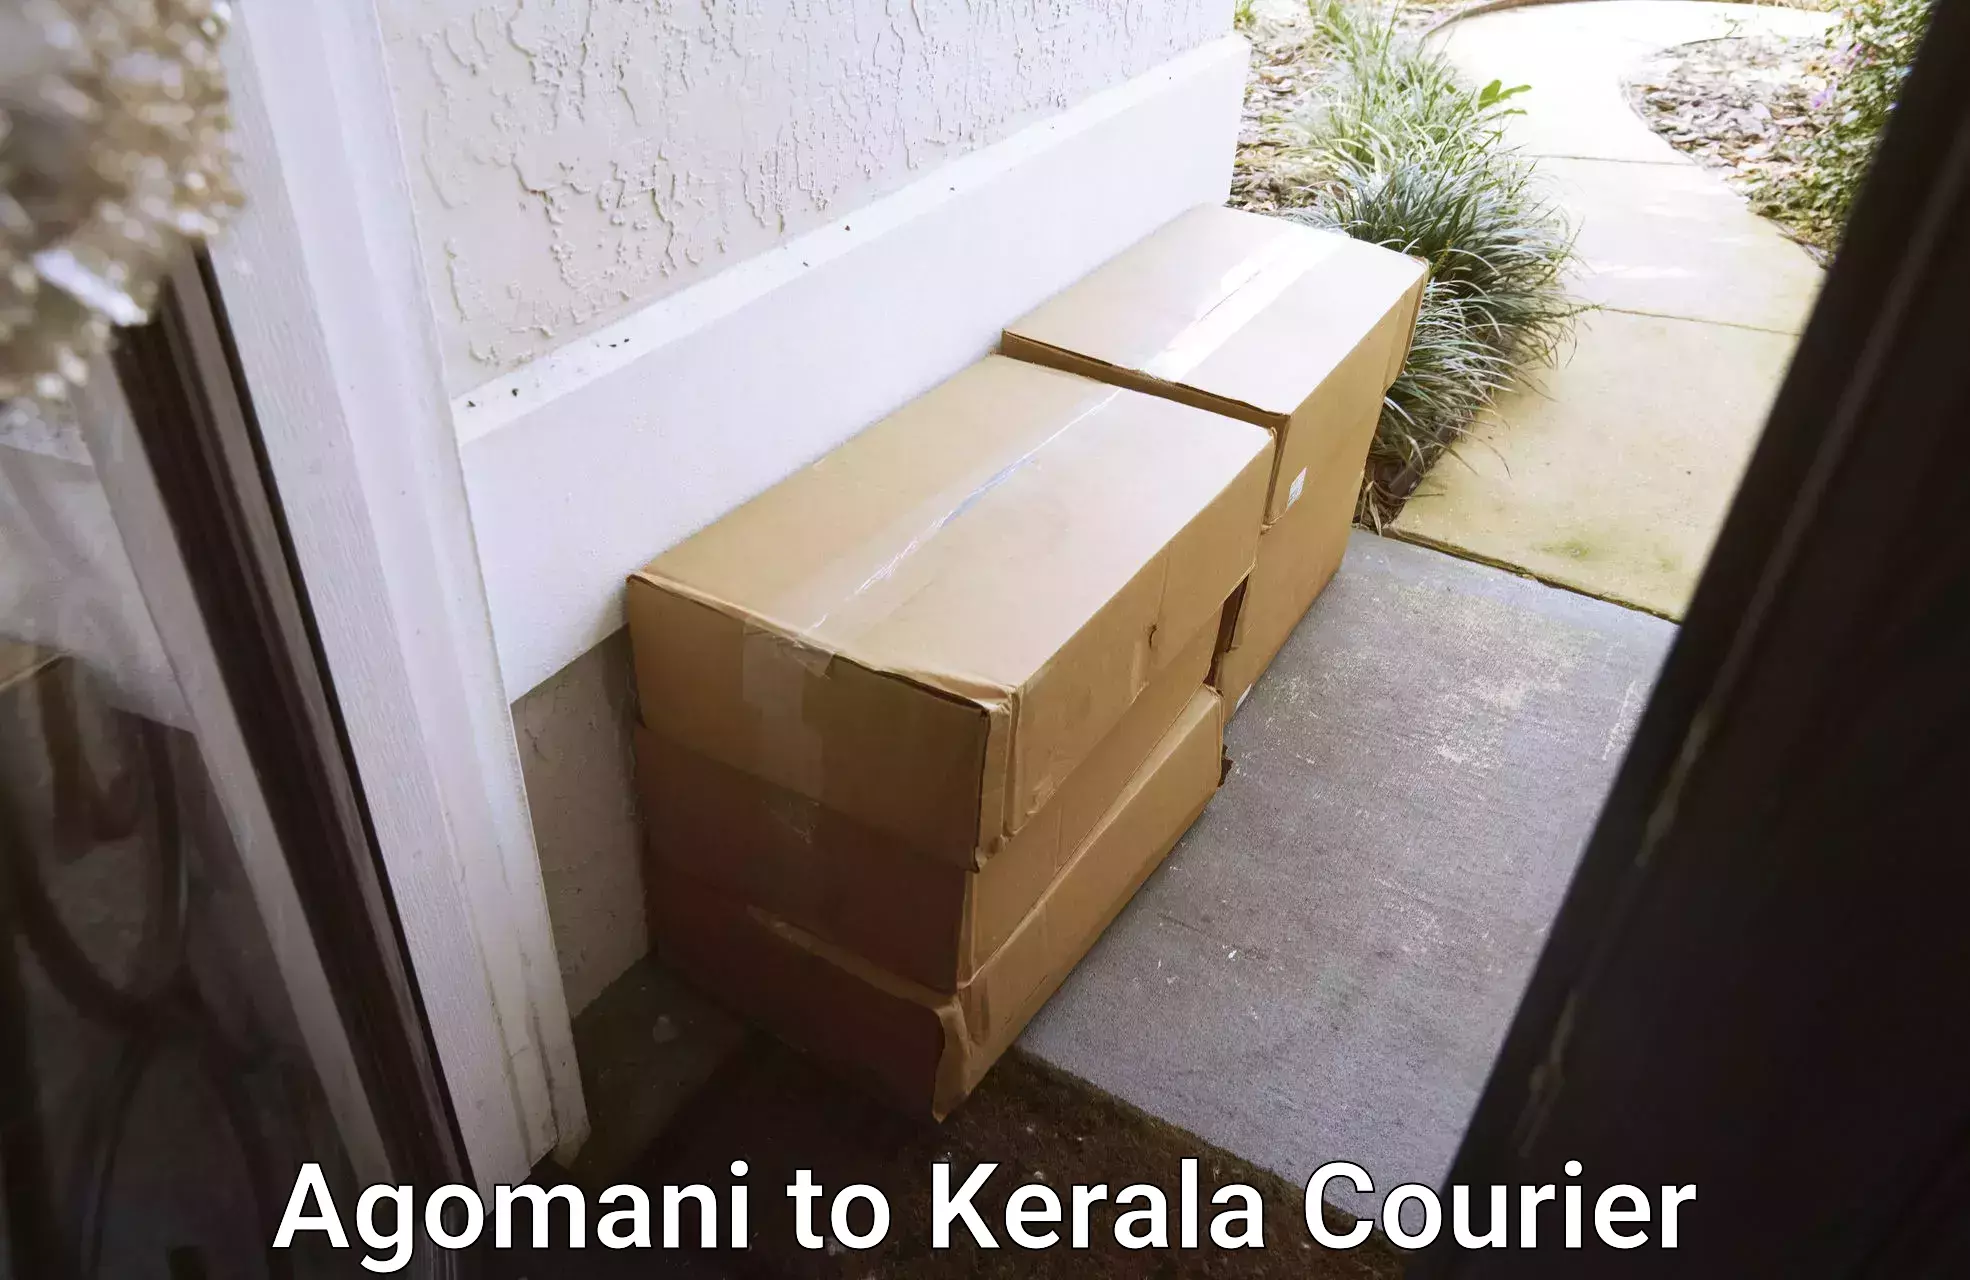 Rural area delivery Agomani to Kerala